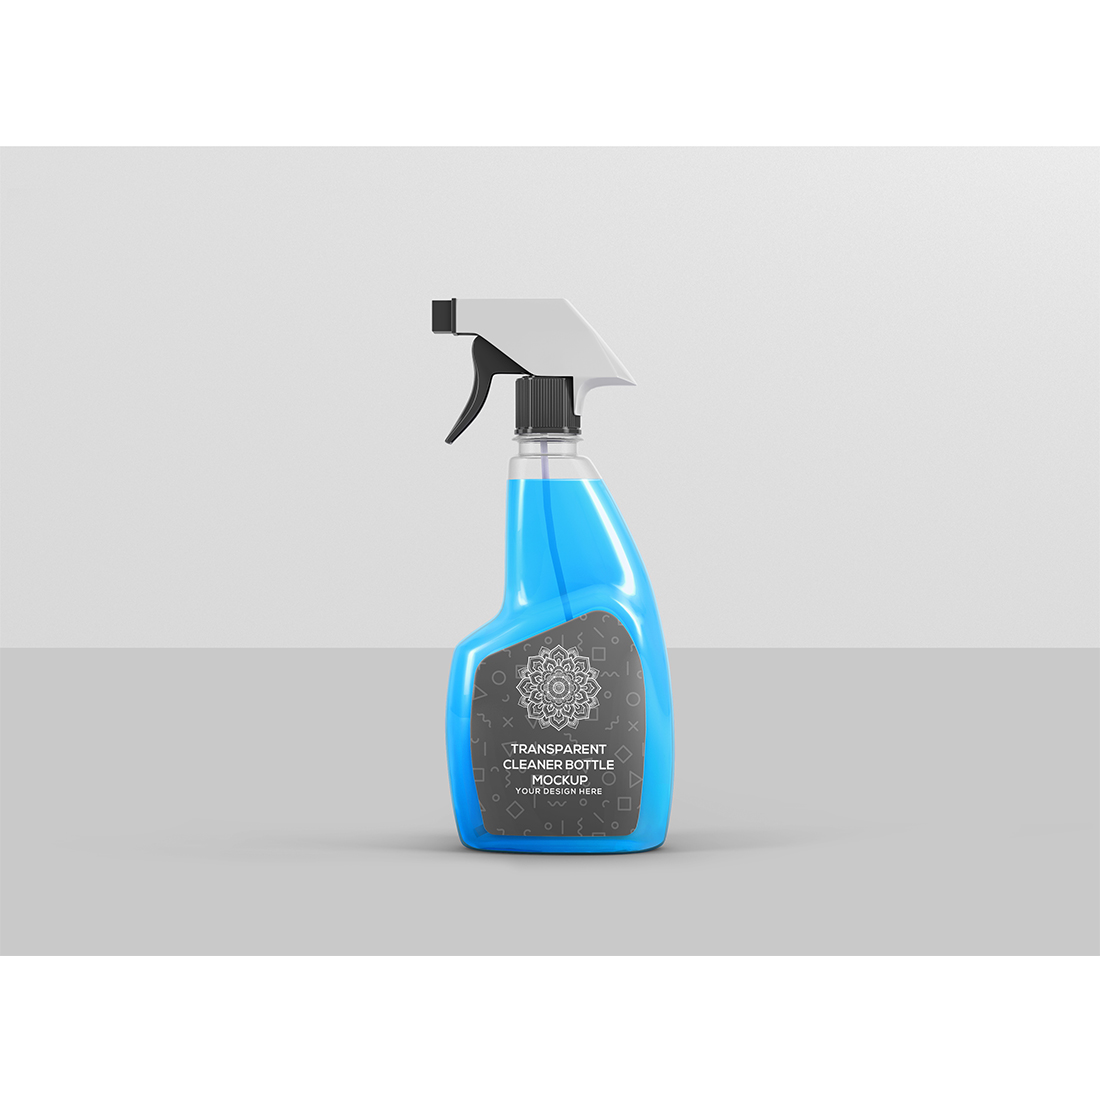 Transparent Cleaner Bottle Mockup preview image.